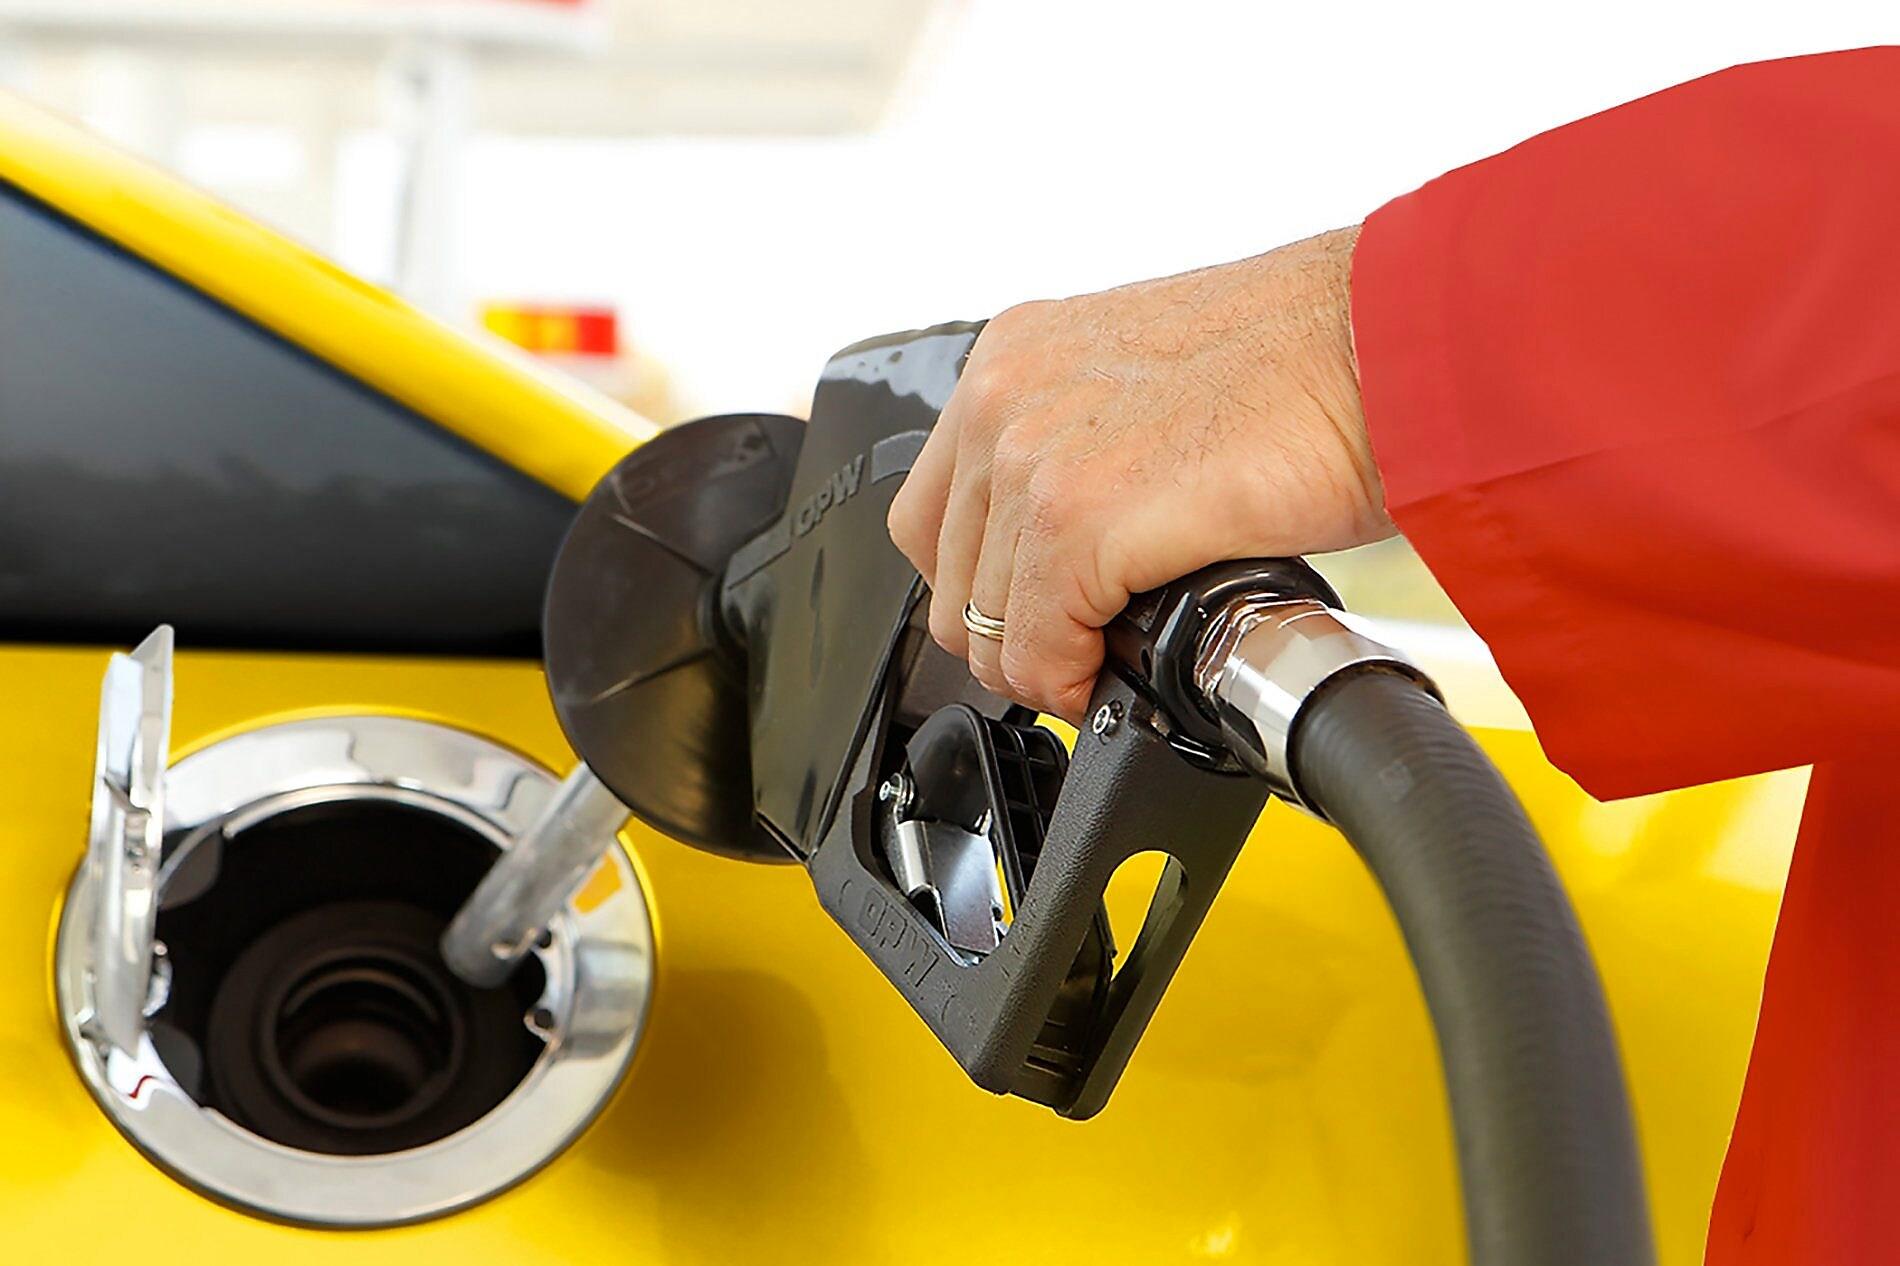 شایعه بنزینی در تعطیلات / تصمیم جدیدی درباره قیمت بنزین است؟